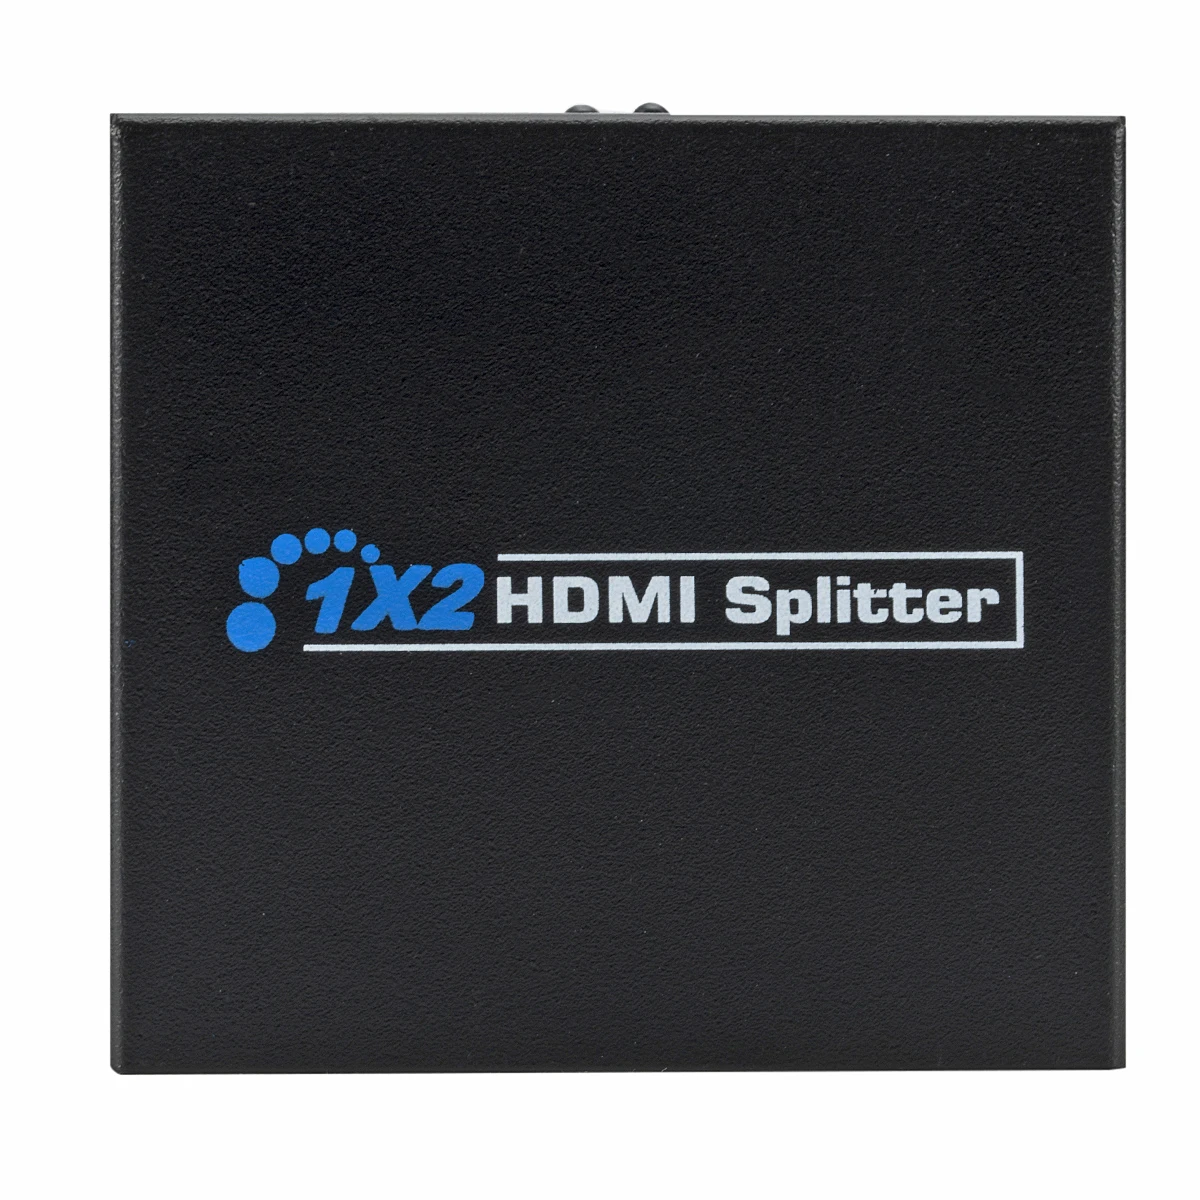 HDMI 4 K Splitter Full HD видео с разрешением 1080 p HDMI коммутатора коммутатор коробка концентратор 1 в 2 из двойной усилитель дисплея для HDTV DVD Xbox PS3/4/5